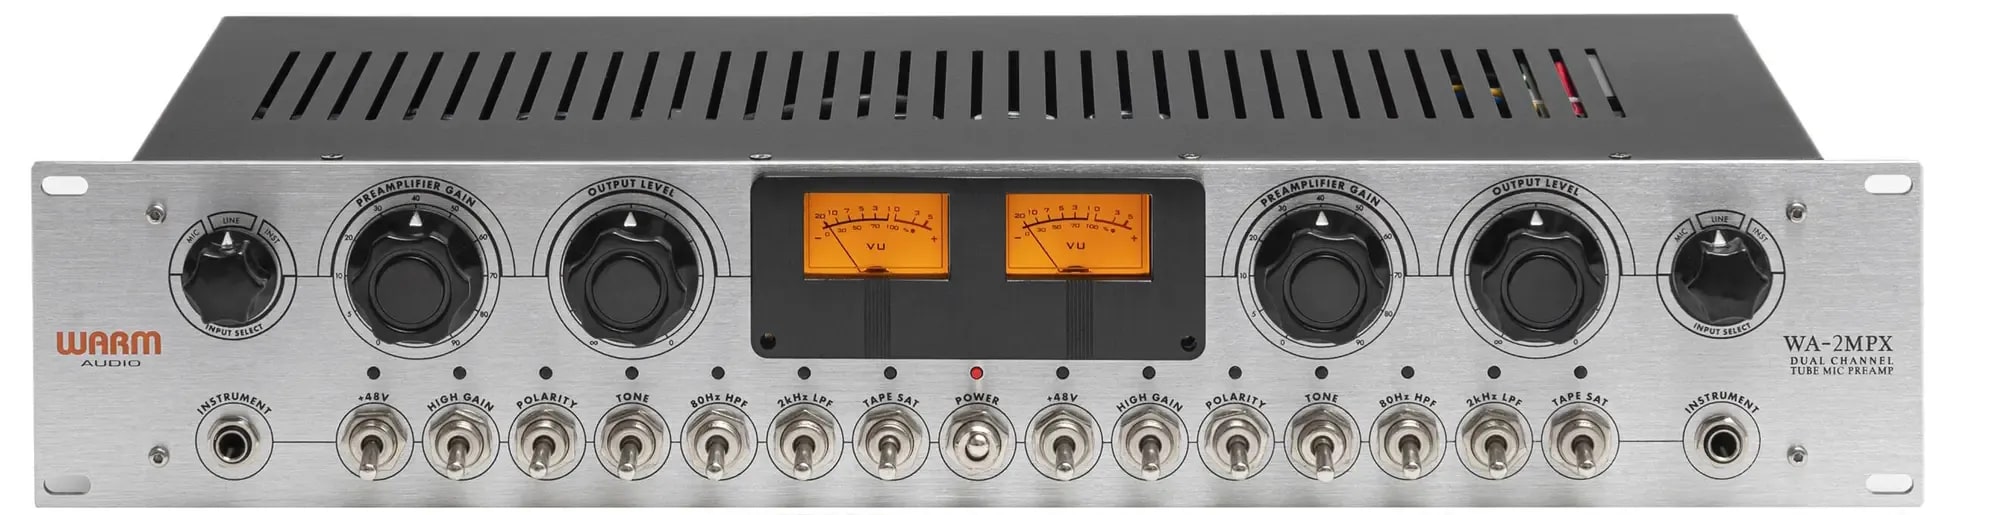 Микрофонные предусилители и микшеры Warm Audio WA-2MPX микрофонные предусилители и микшеры warm audio wa273 eq